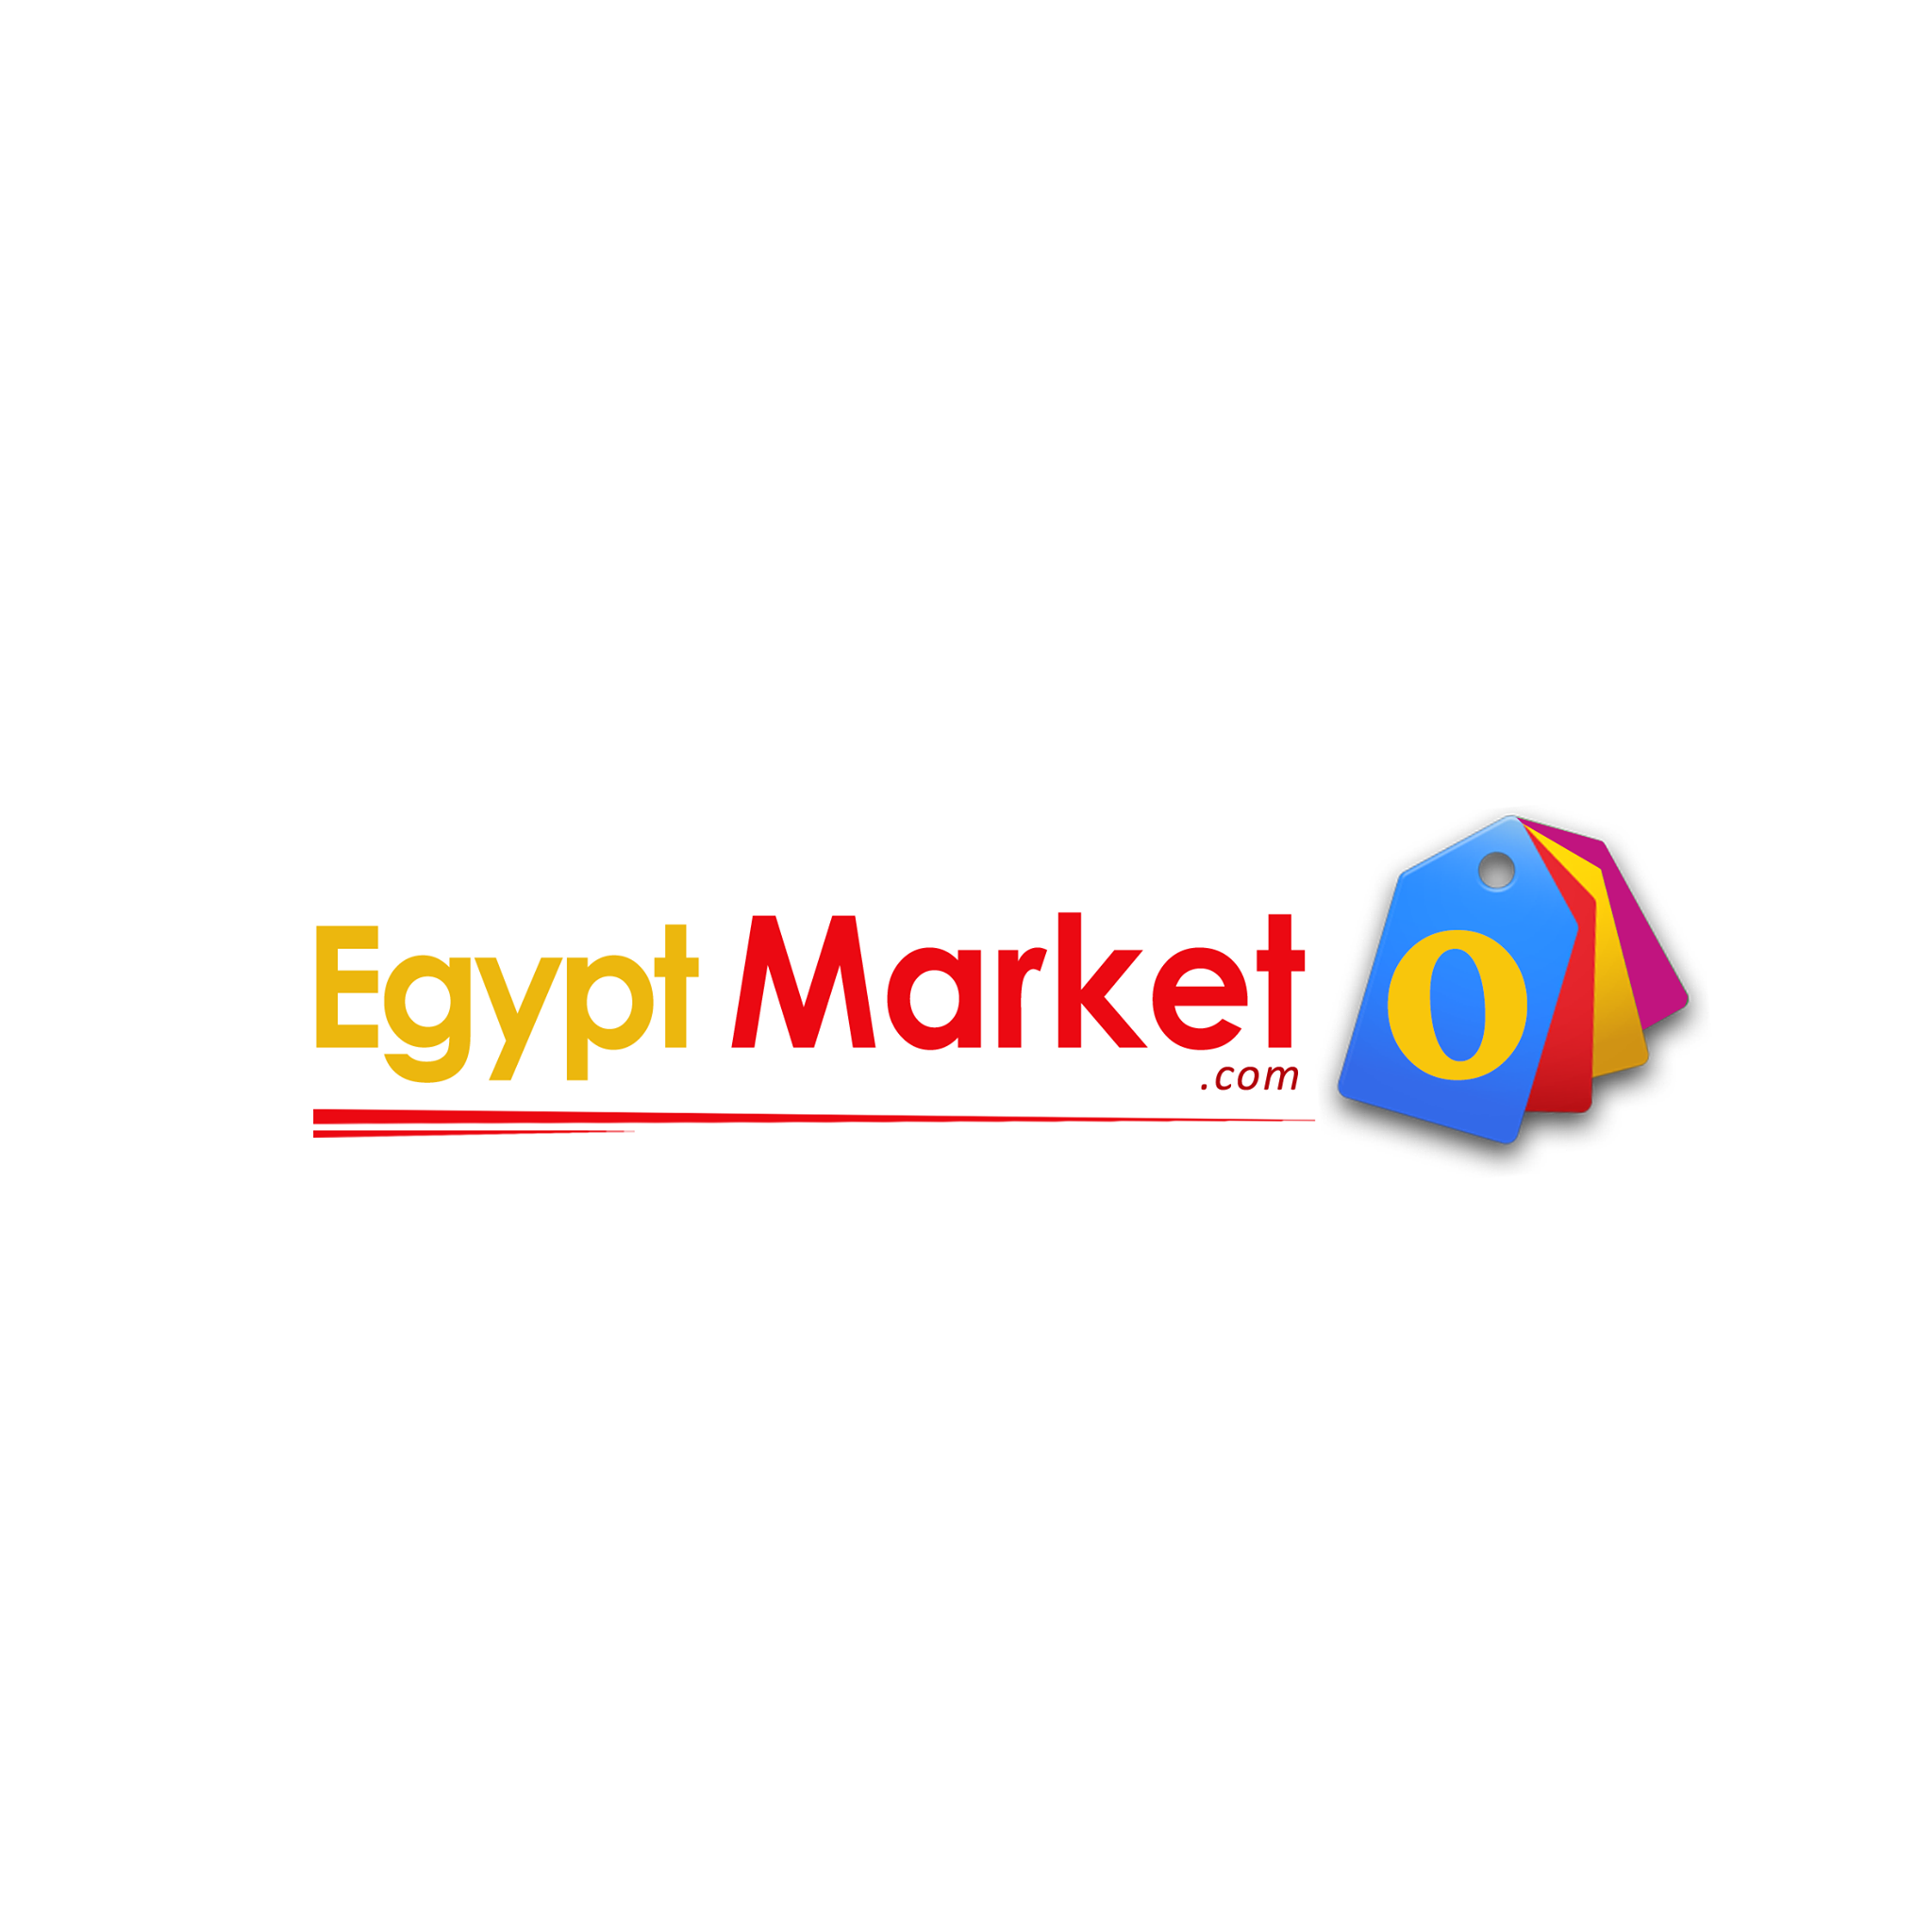 EgyptMarketo.com